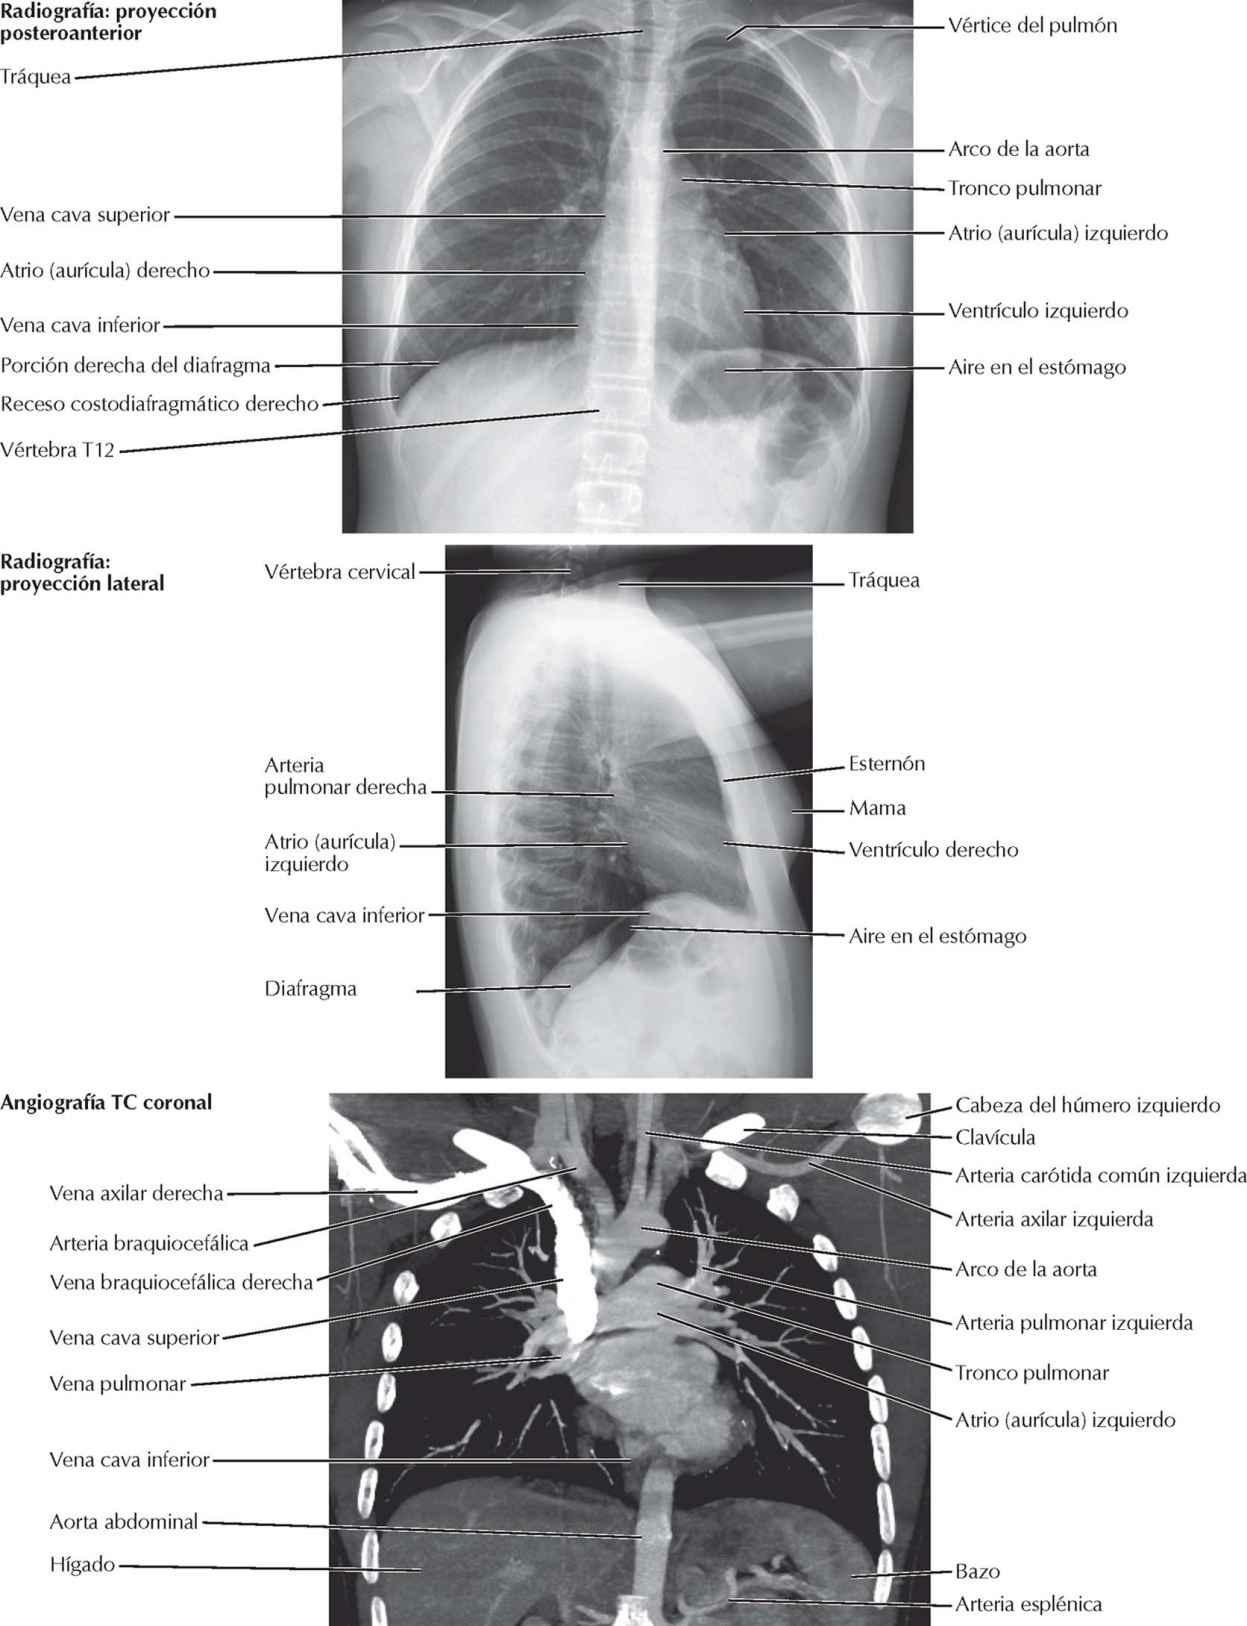 Corazón: radiografías y angiografía TC; auscultación del corazón